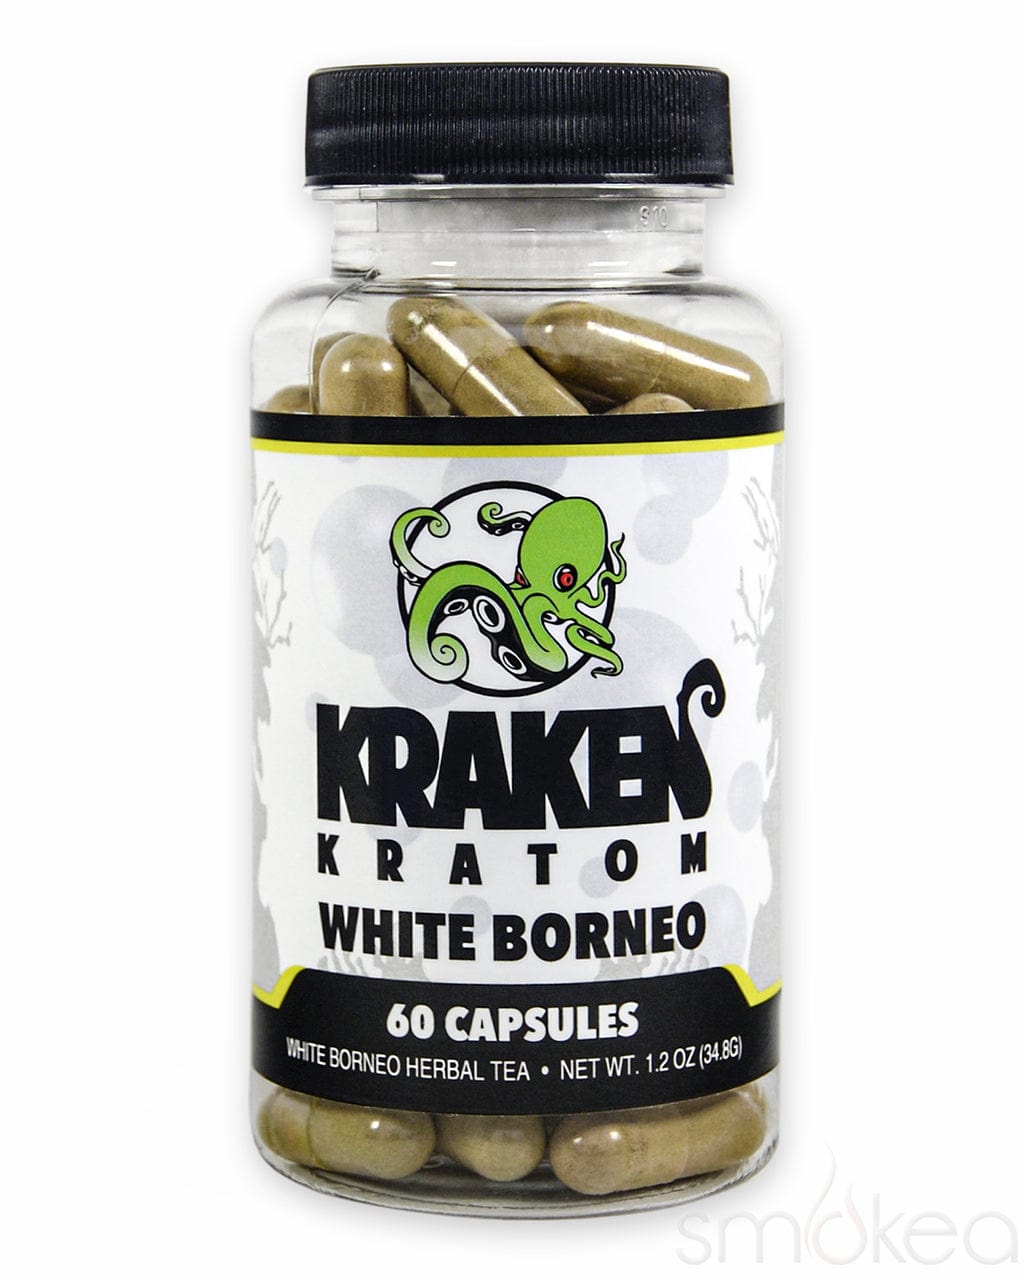 Kraken Kratom White Borneo Kratom Capsules 60 Pack